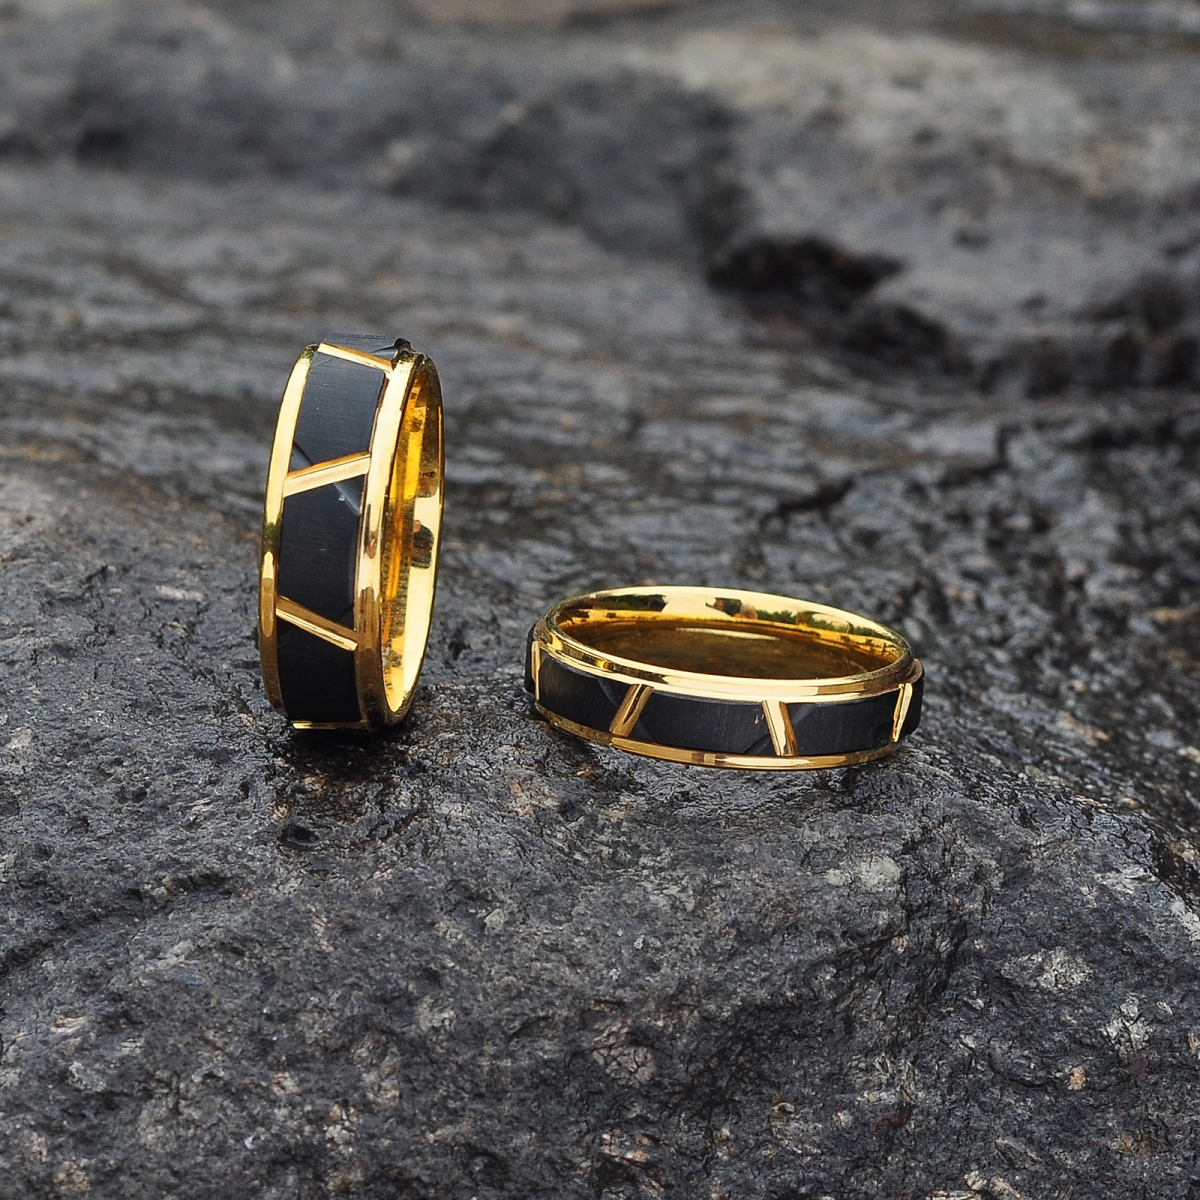 6mm Tungsten Carbide Ring Women US$6.5/PC-NORSECOLLECTION- Viking Jewelry,Viking Necklace,Viking Bracelet,Viking Rings,Viking Mugs,Viking Accessories,Viking Crafts